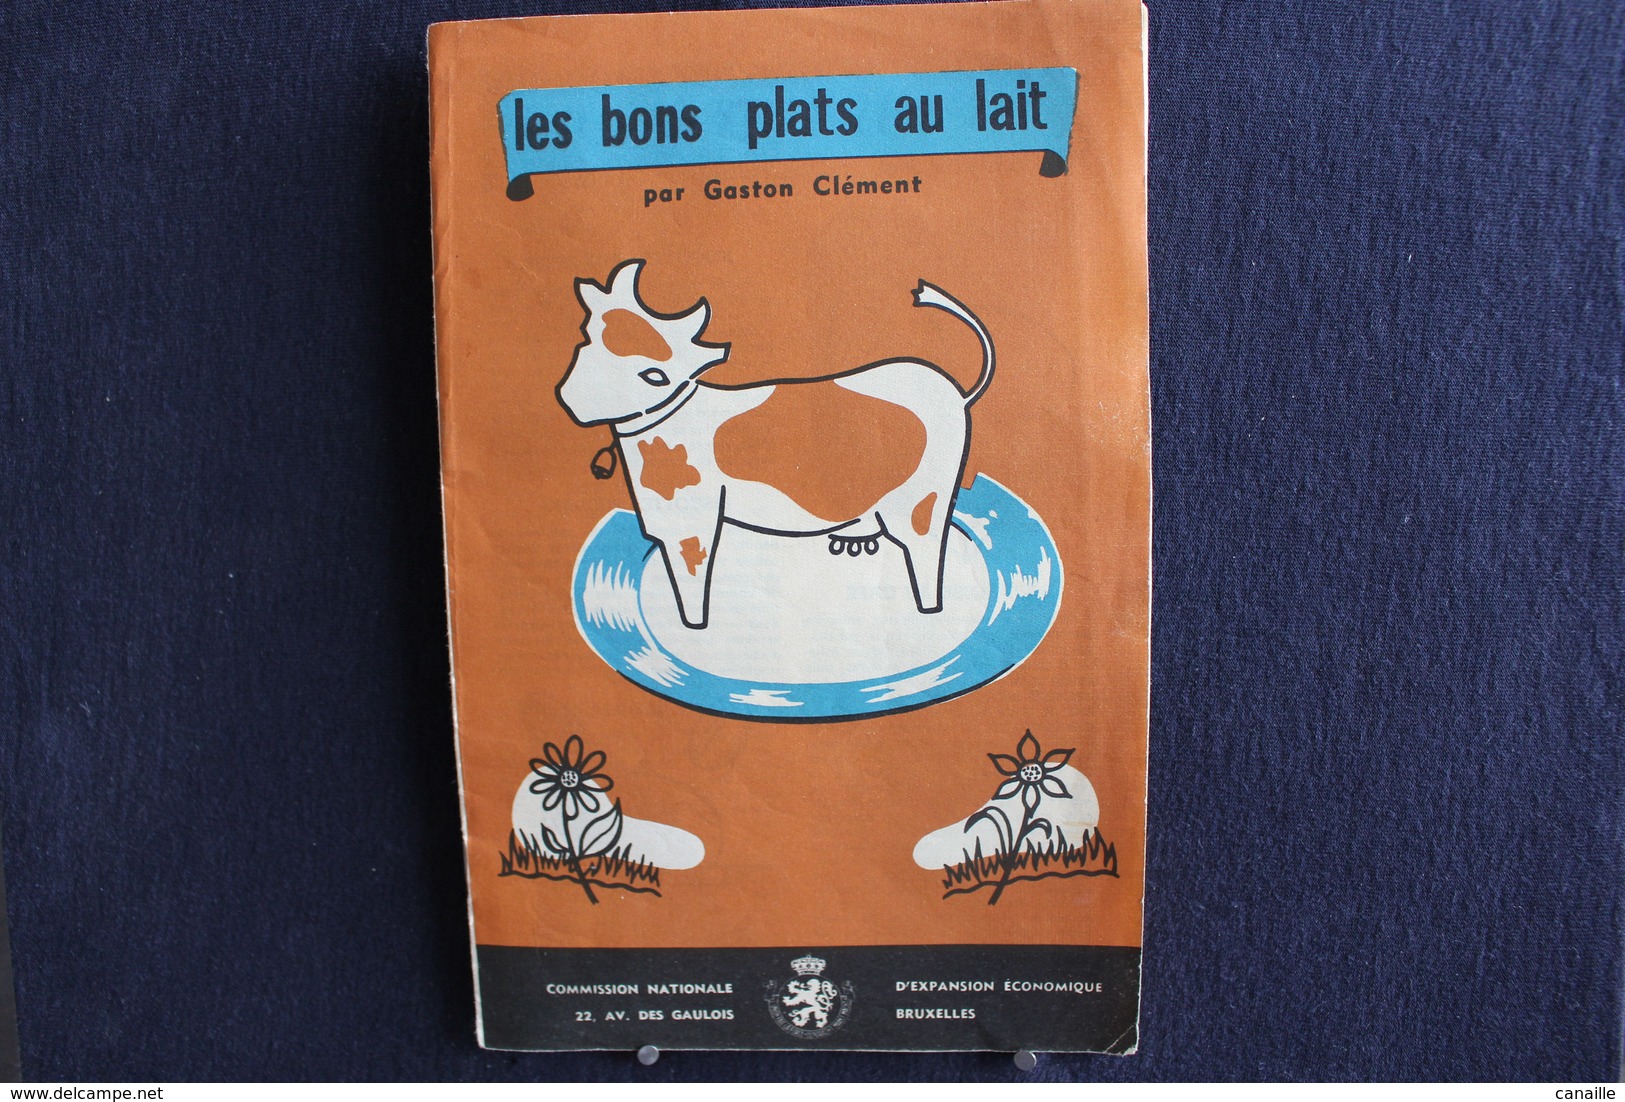 Publicités ( 4 )  - Livret De Cuisine - Par Gaston Clément - Les Bons Plats Au Lait -  Forma 13x20 Cm 8 Page - Culinaria & Vinos